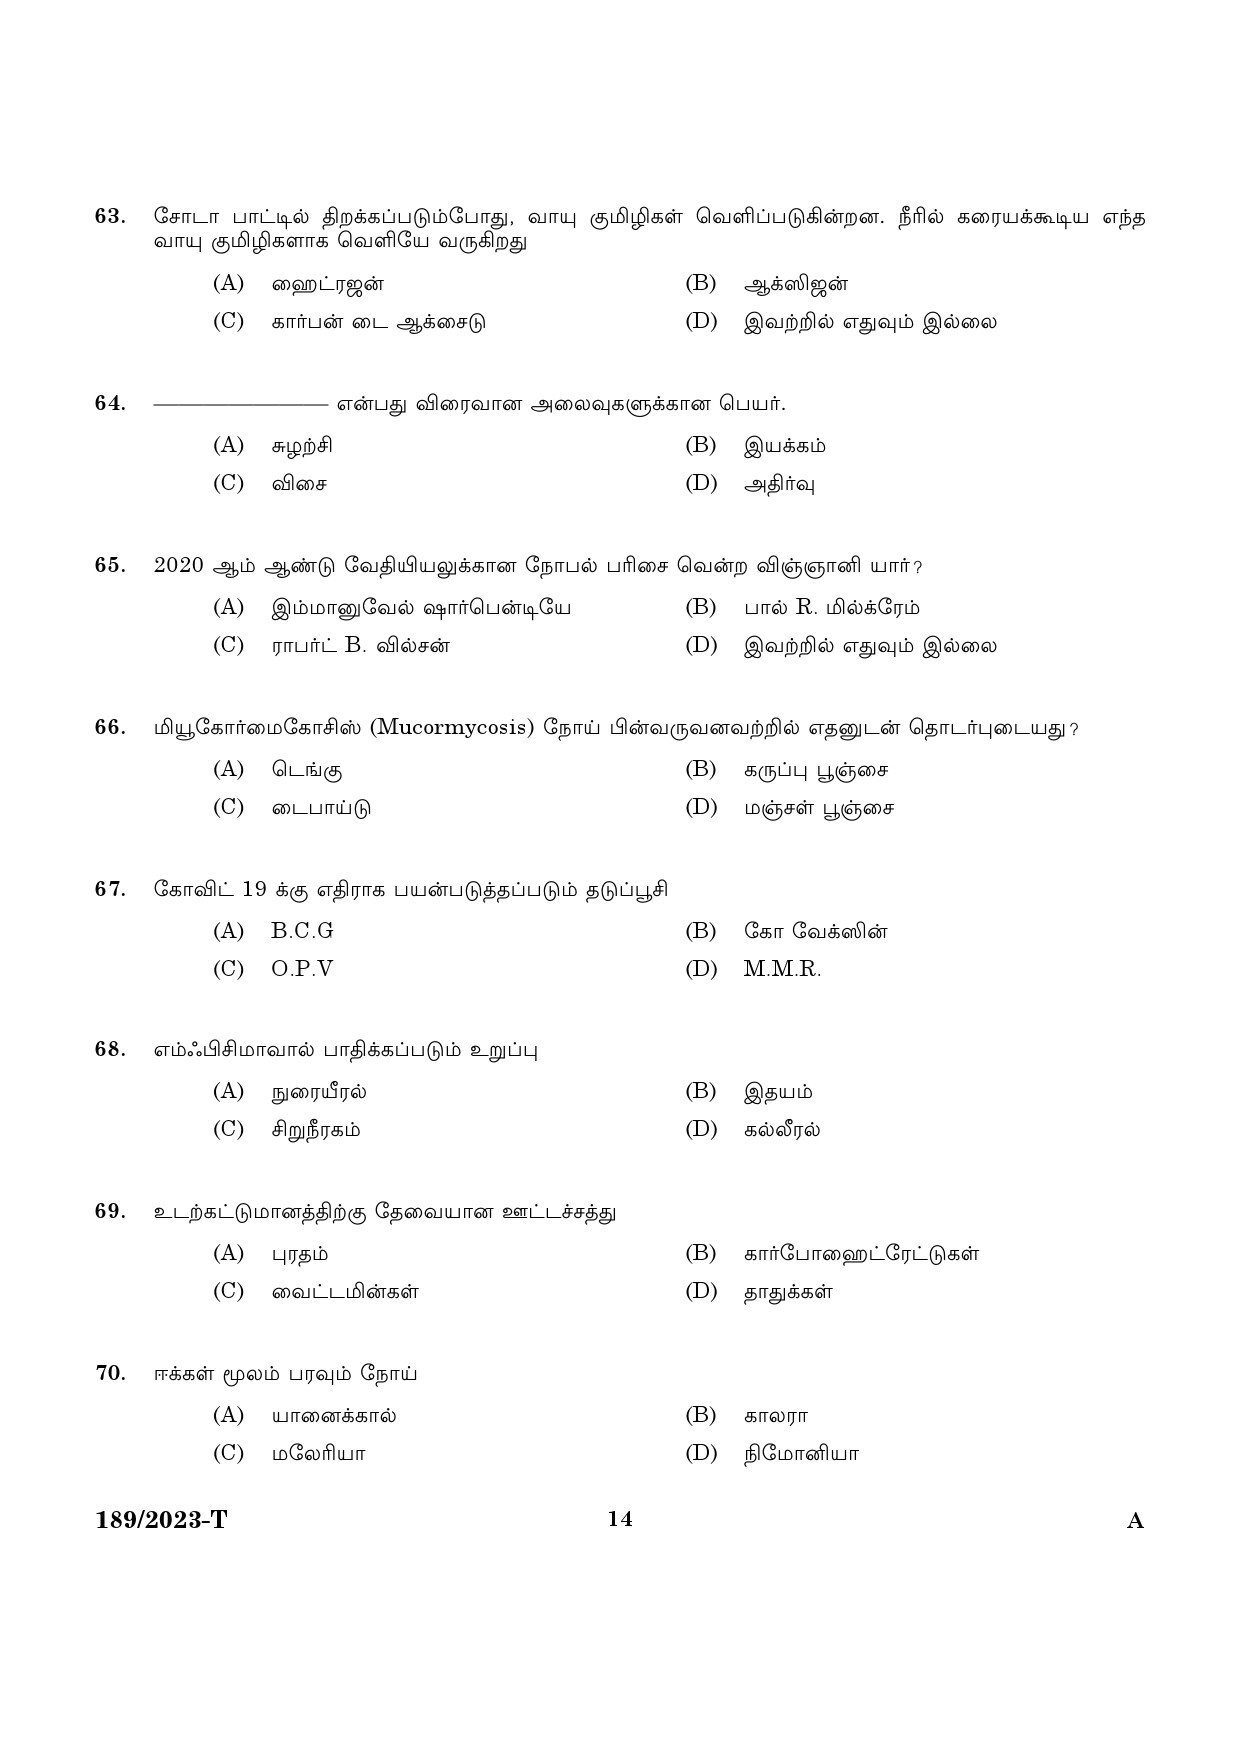 KPSC LGS Tamil Exam 2023 Code 1892023 T 12